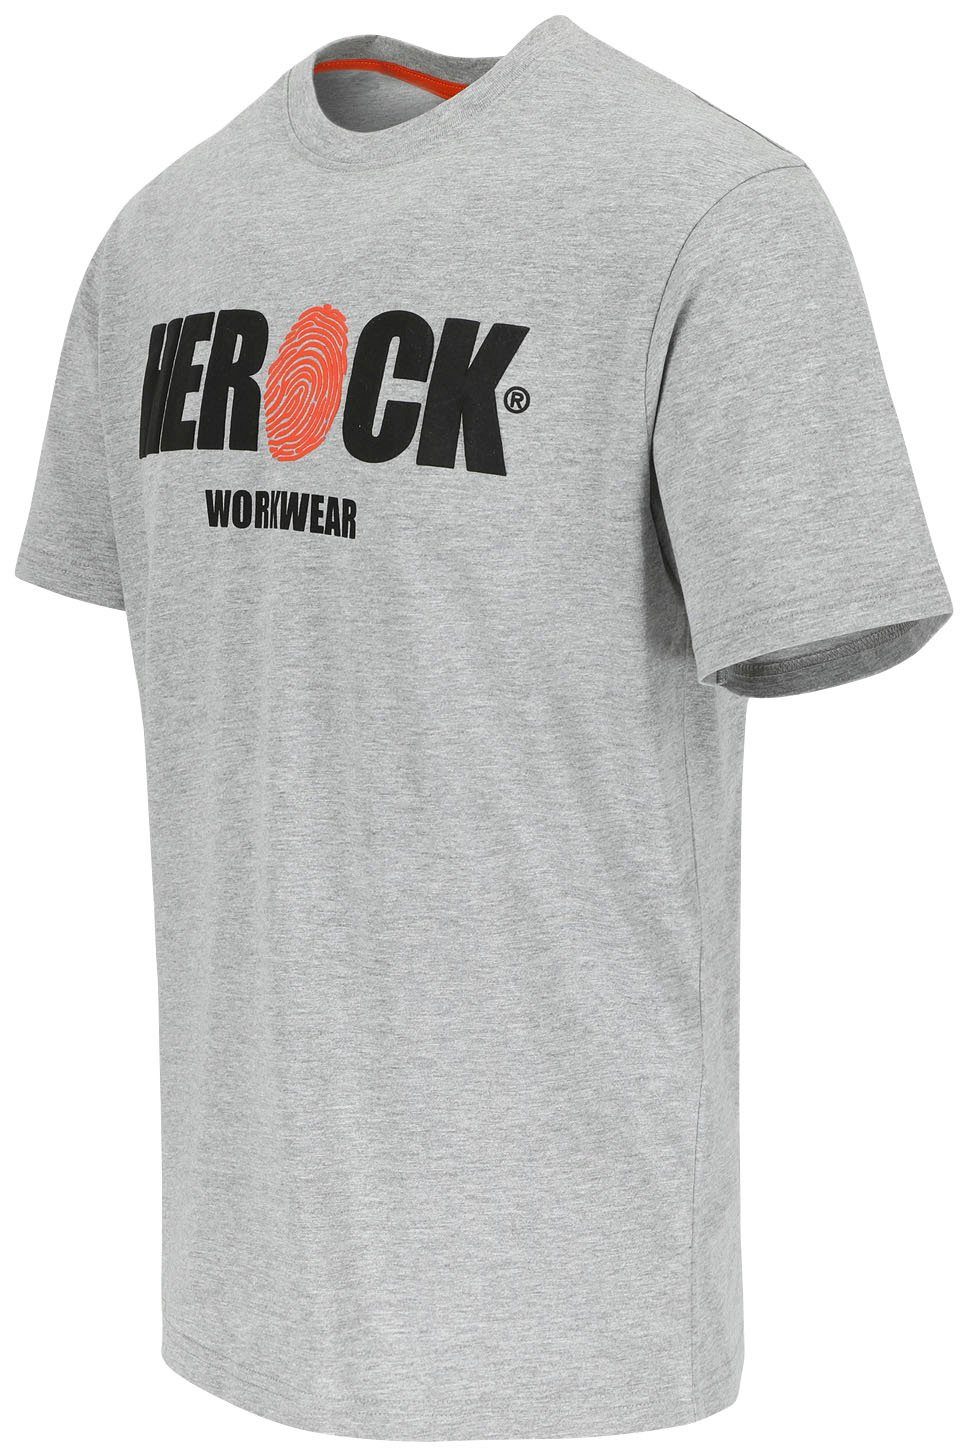 angenehmes Herock Rundhals, ENI mit Tragegefühl Baumwolle, grau T-Shirt Herock®-Aufdruck,